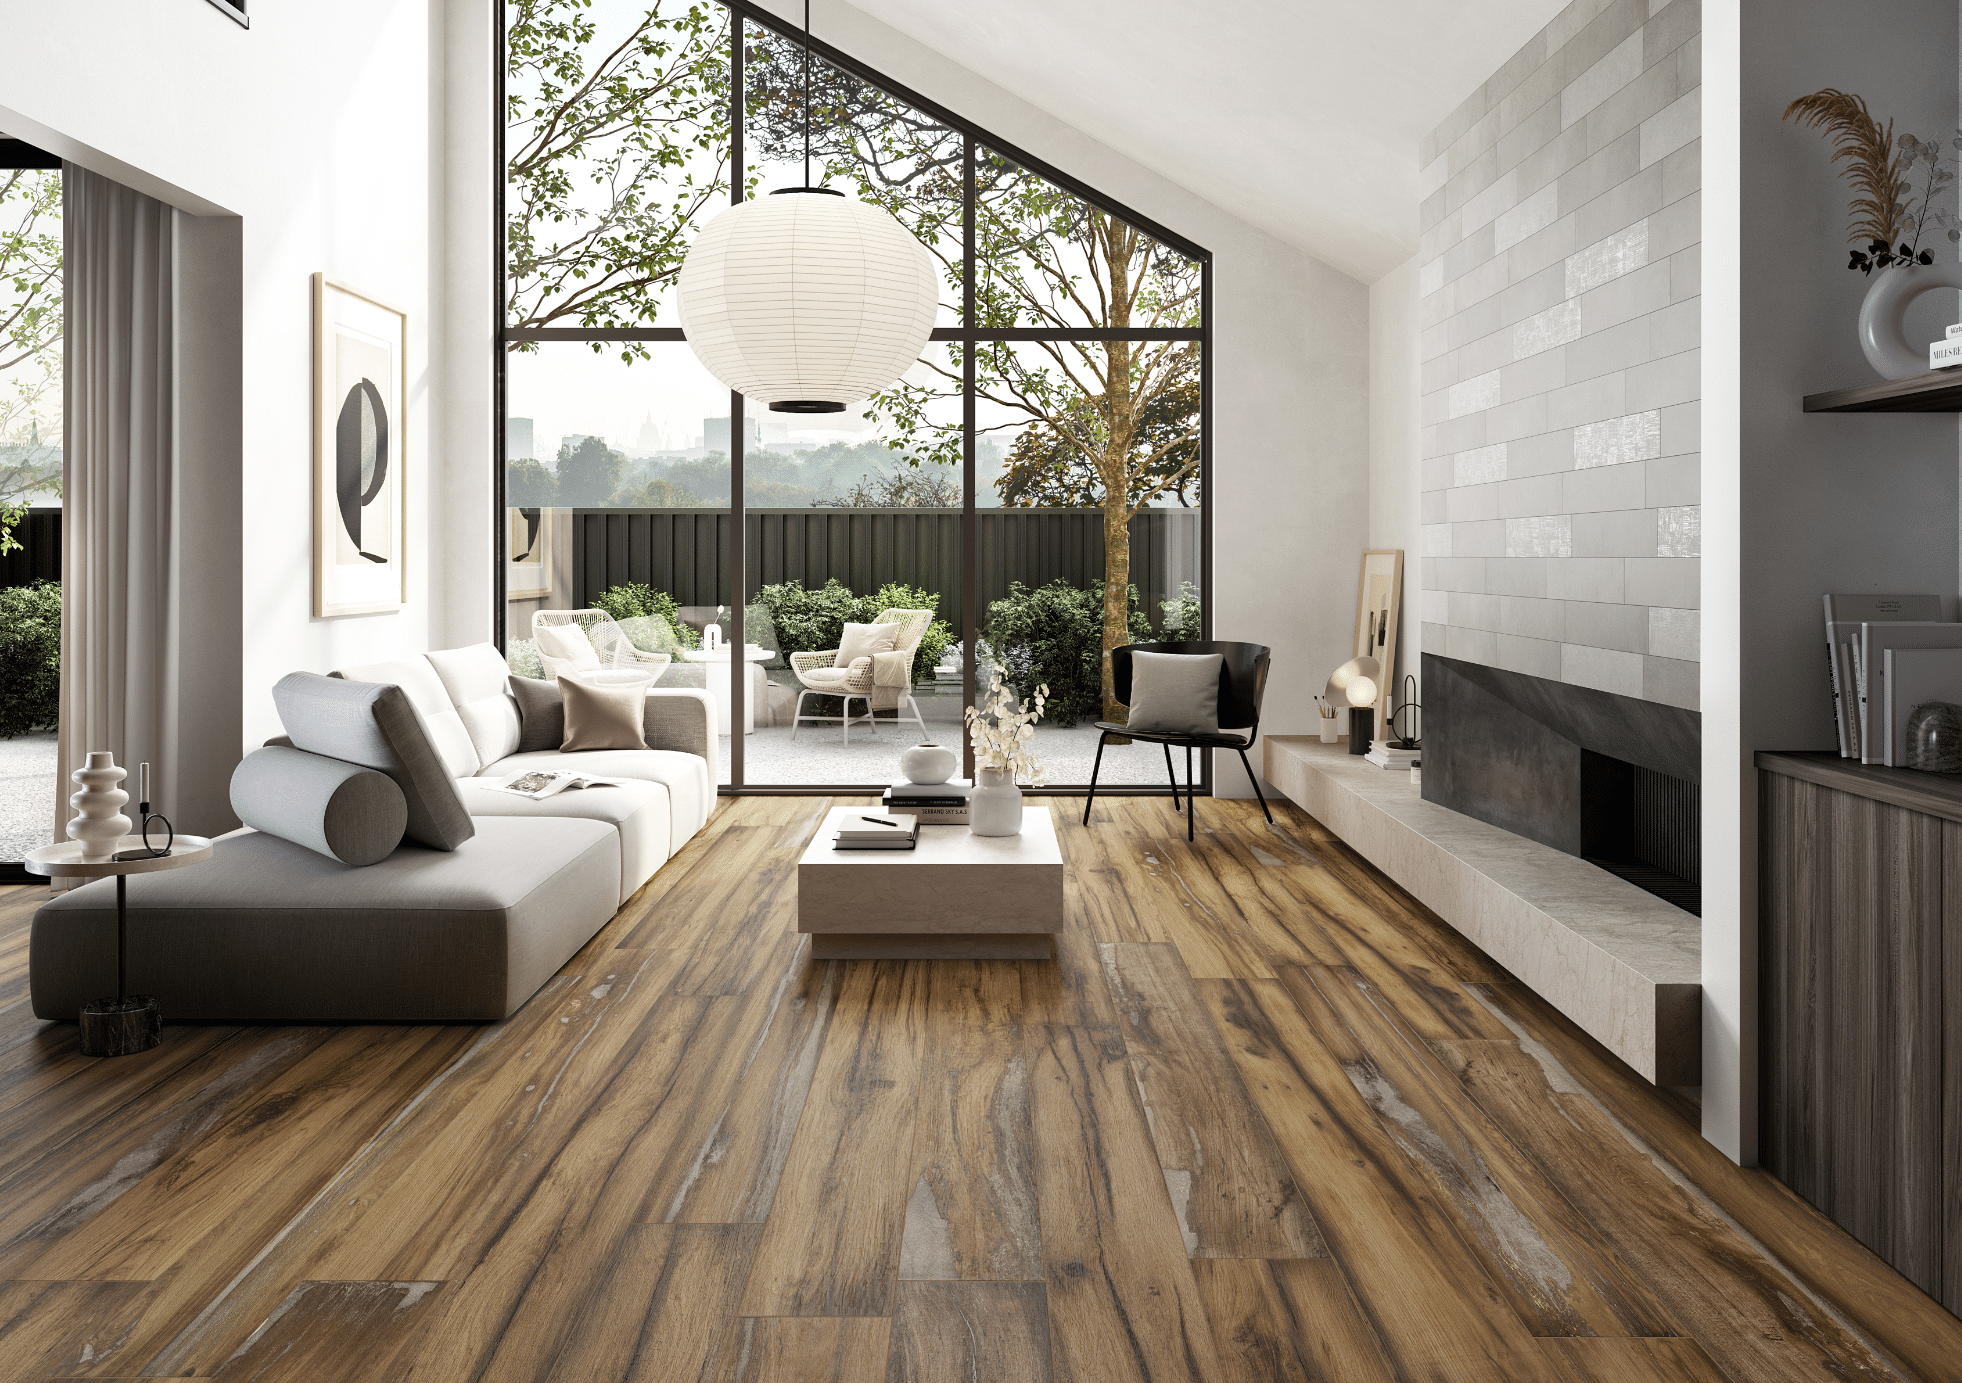 Fliesendorf zeigt ein Wohnzimmer mit Holzboden, heller Couch, runder Pendelleuchte und großer Glasfront mit Blick auf die geflieste Terrasse mit hellen Möbeln.